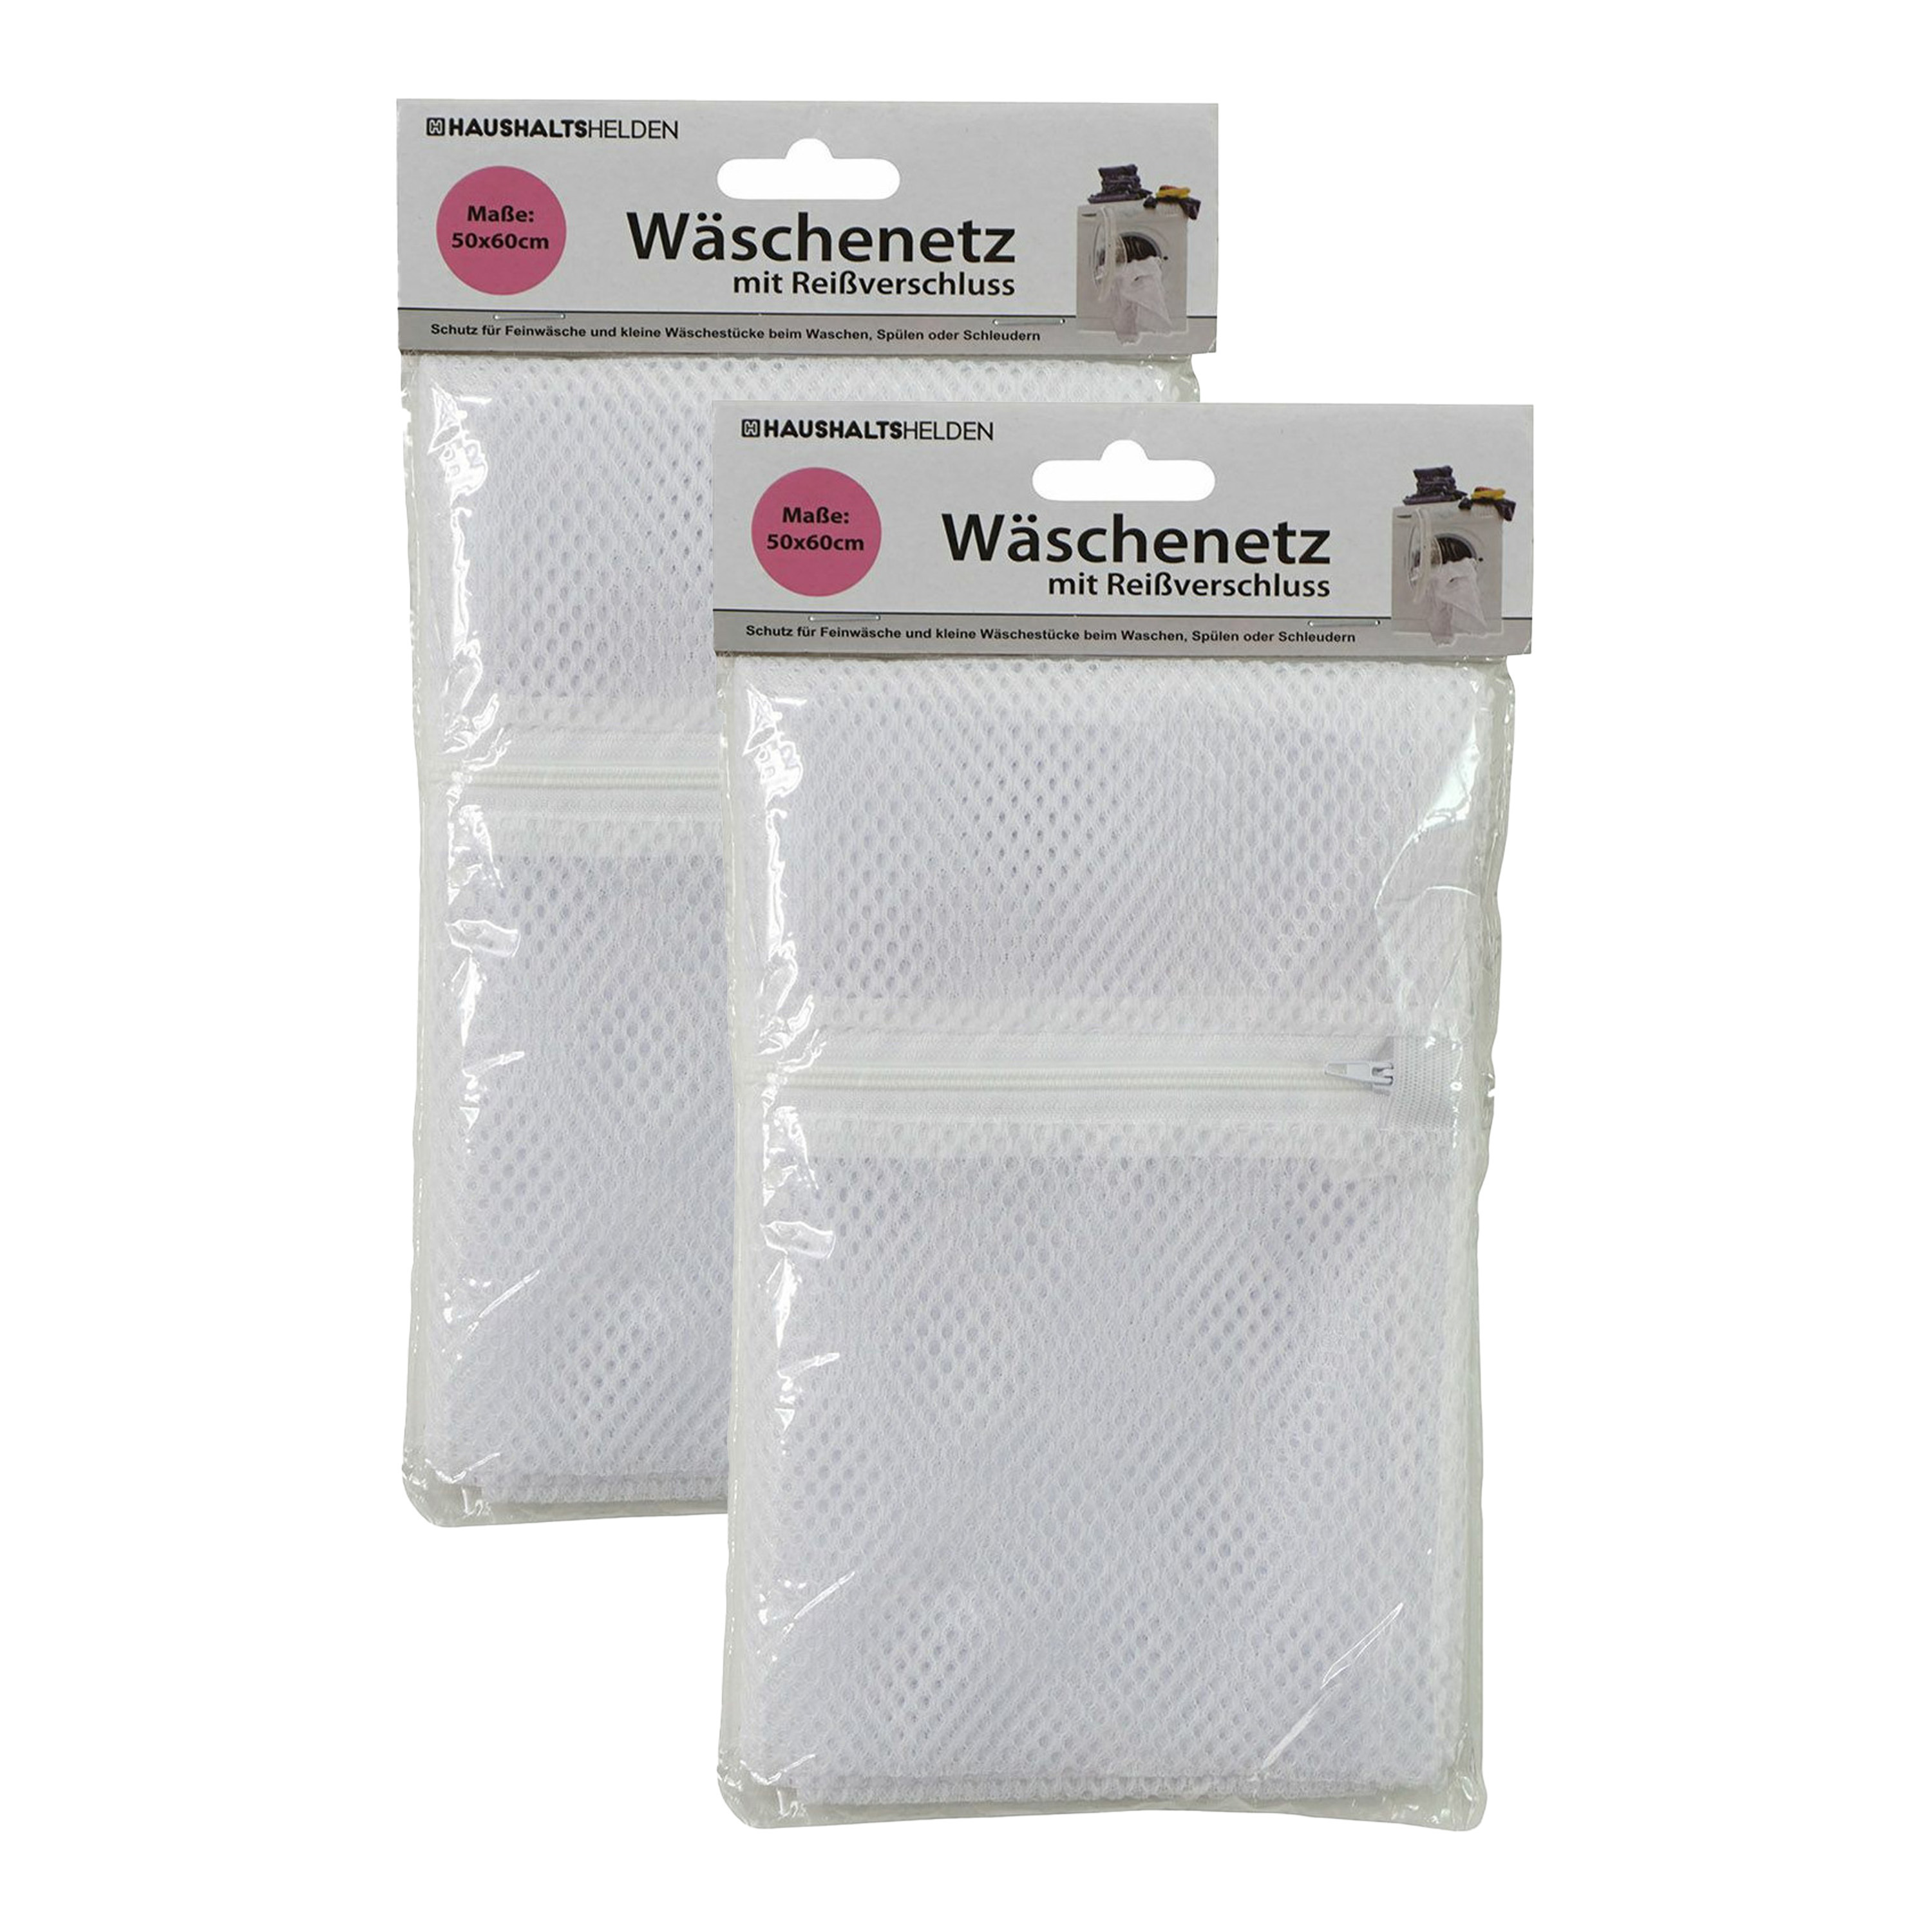 Waszak voor kwetsbare kleding wasgoed/waszak - 2x - wit - large size - 50 x 60 cm